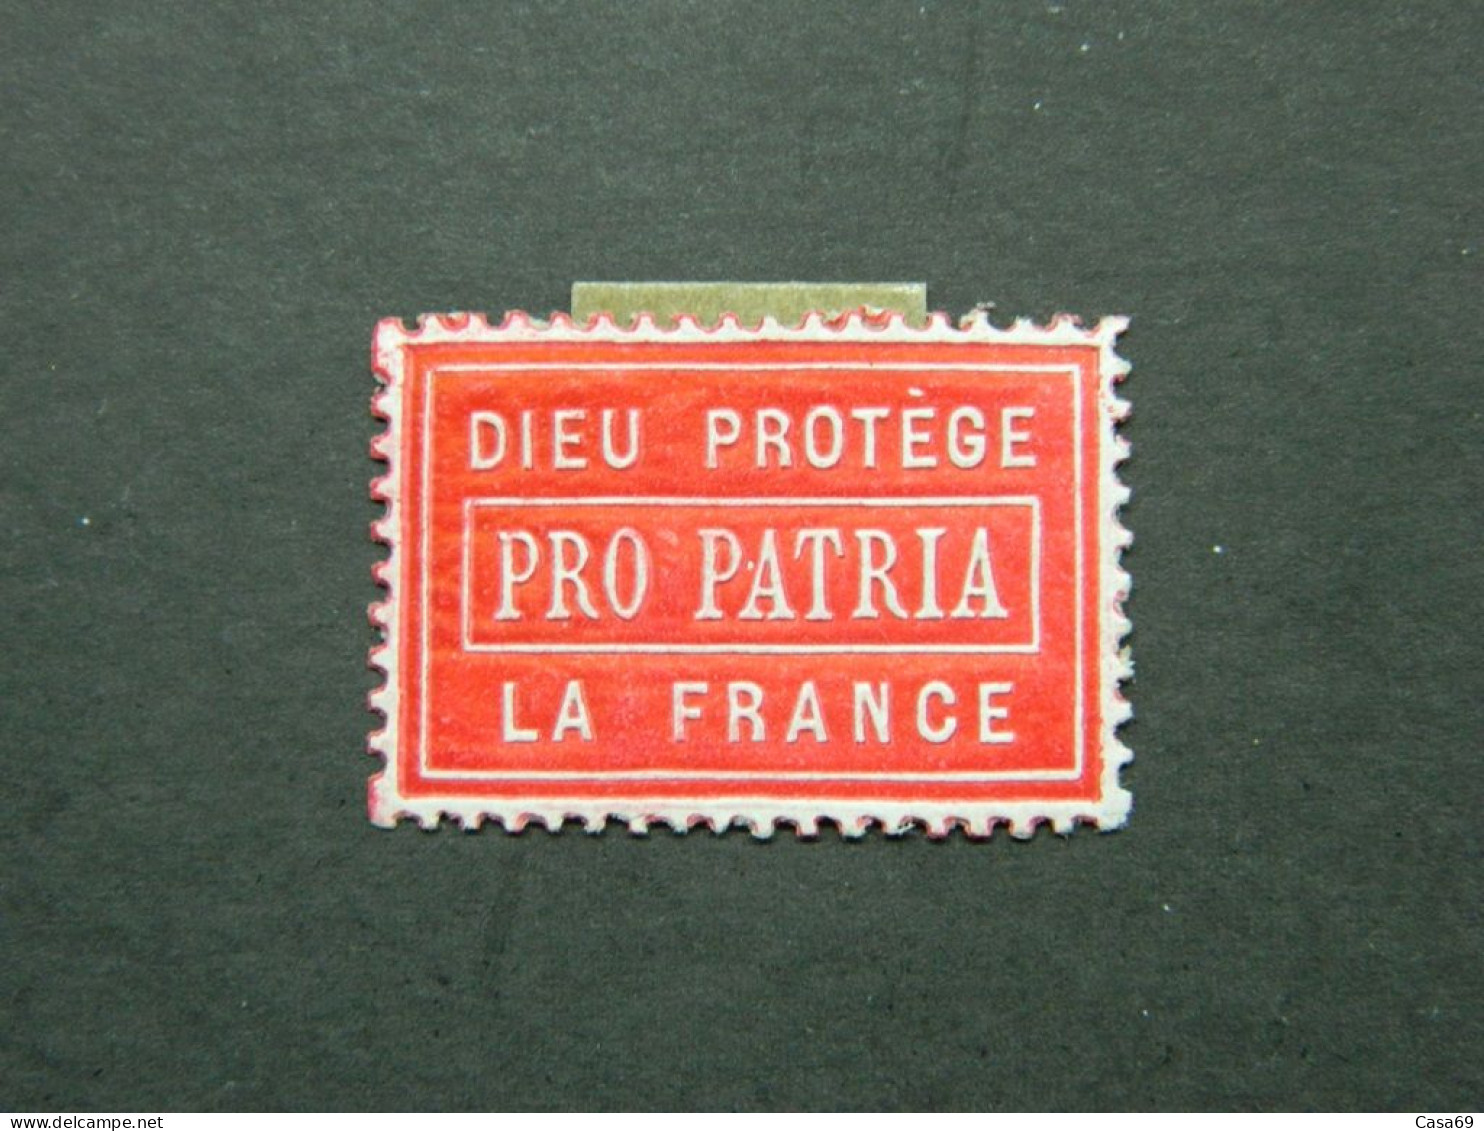 Vignette Militaire De Propagande En Relief Pro Patria Dieu Protège La France - Vignettes Militaires